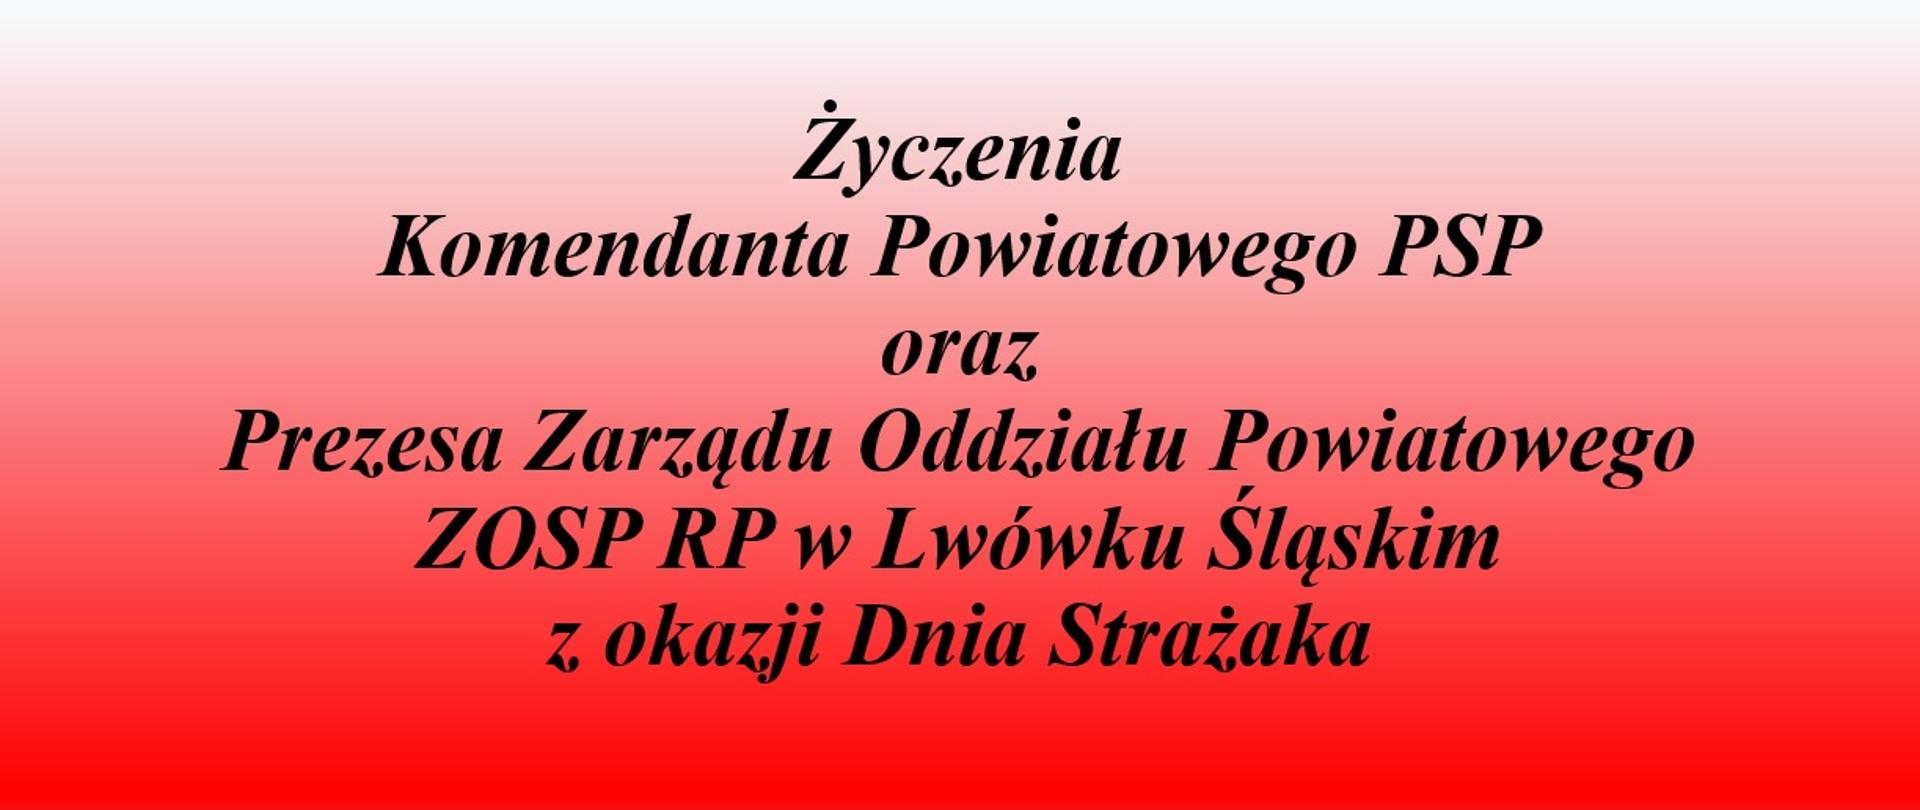 Życzenia Komendanta Powiatowego PSP w Lwówku Ślaskim oraz Prezesa ZOP ZOSP RP w Lwówku Ślaskim z okazji Dnia Strażaka